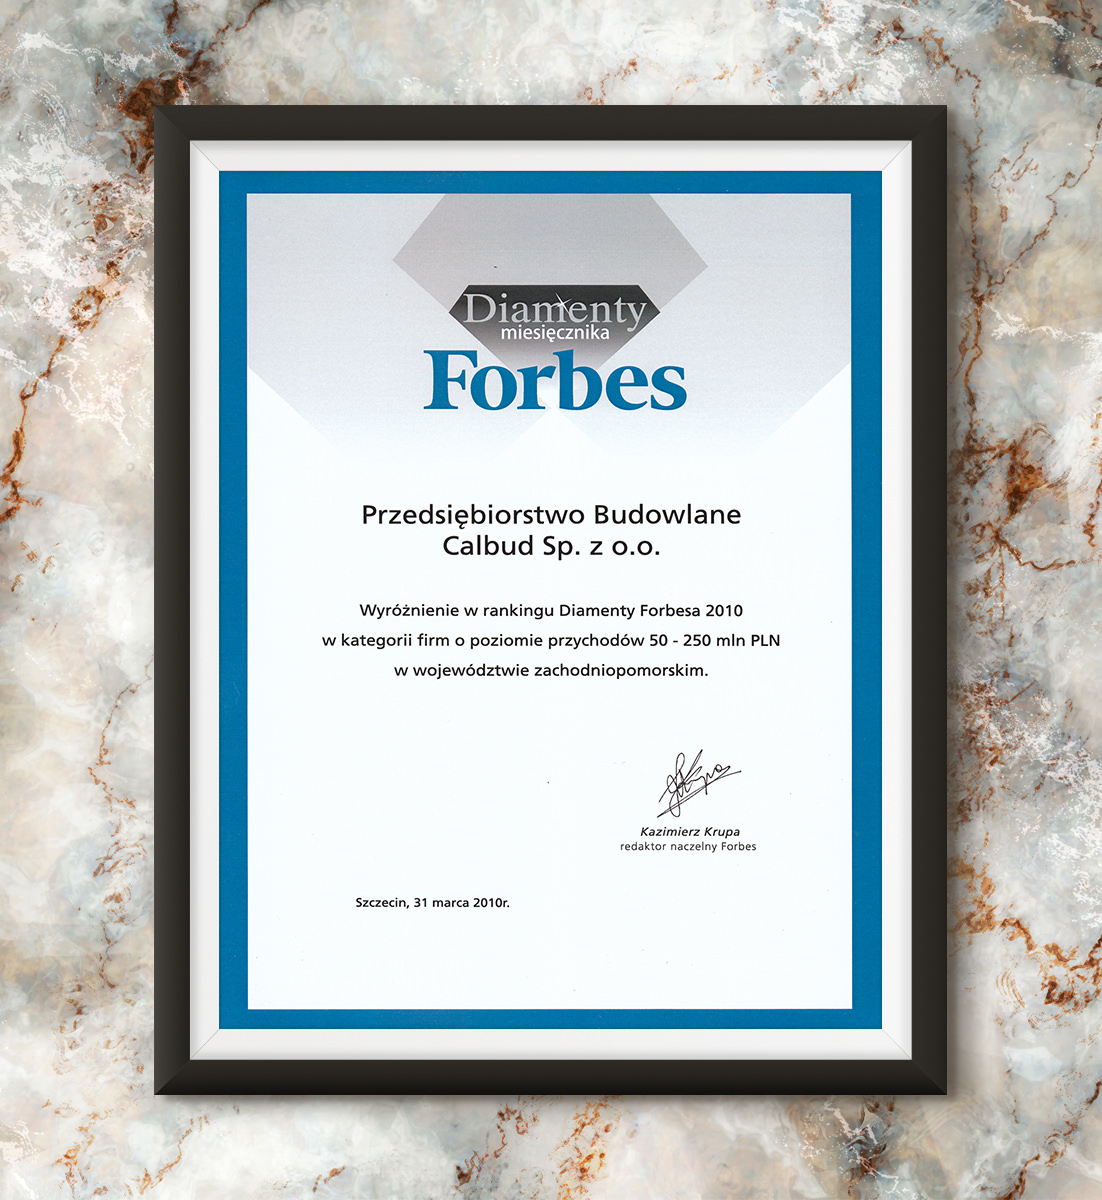 Diamenty Forbesa 2010 - wyróżnienie  